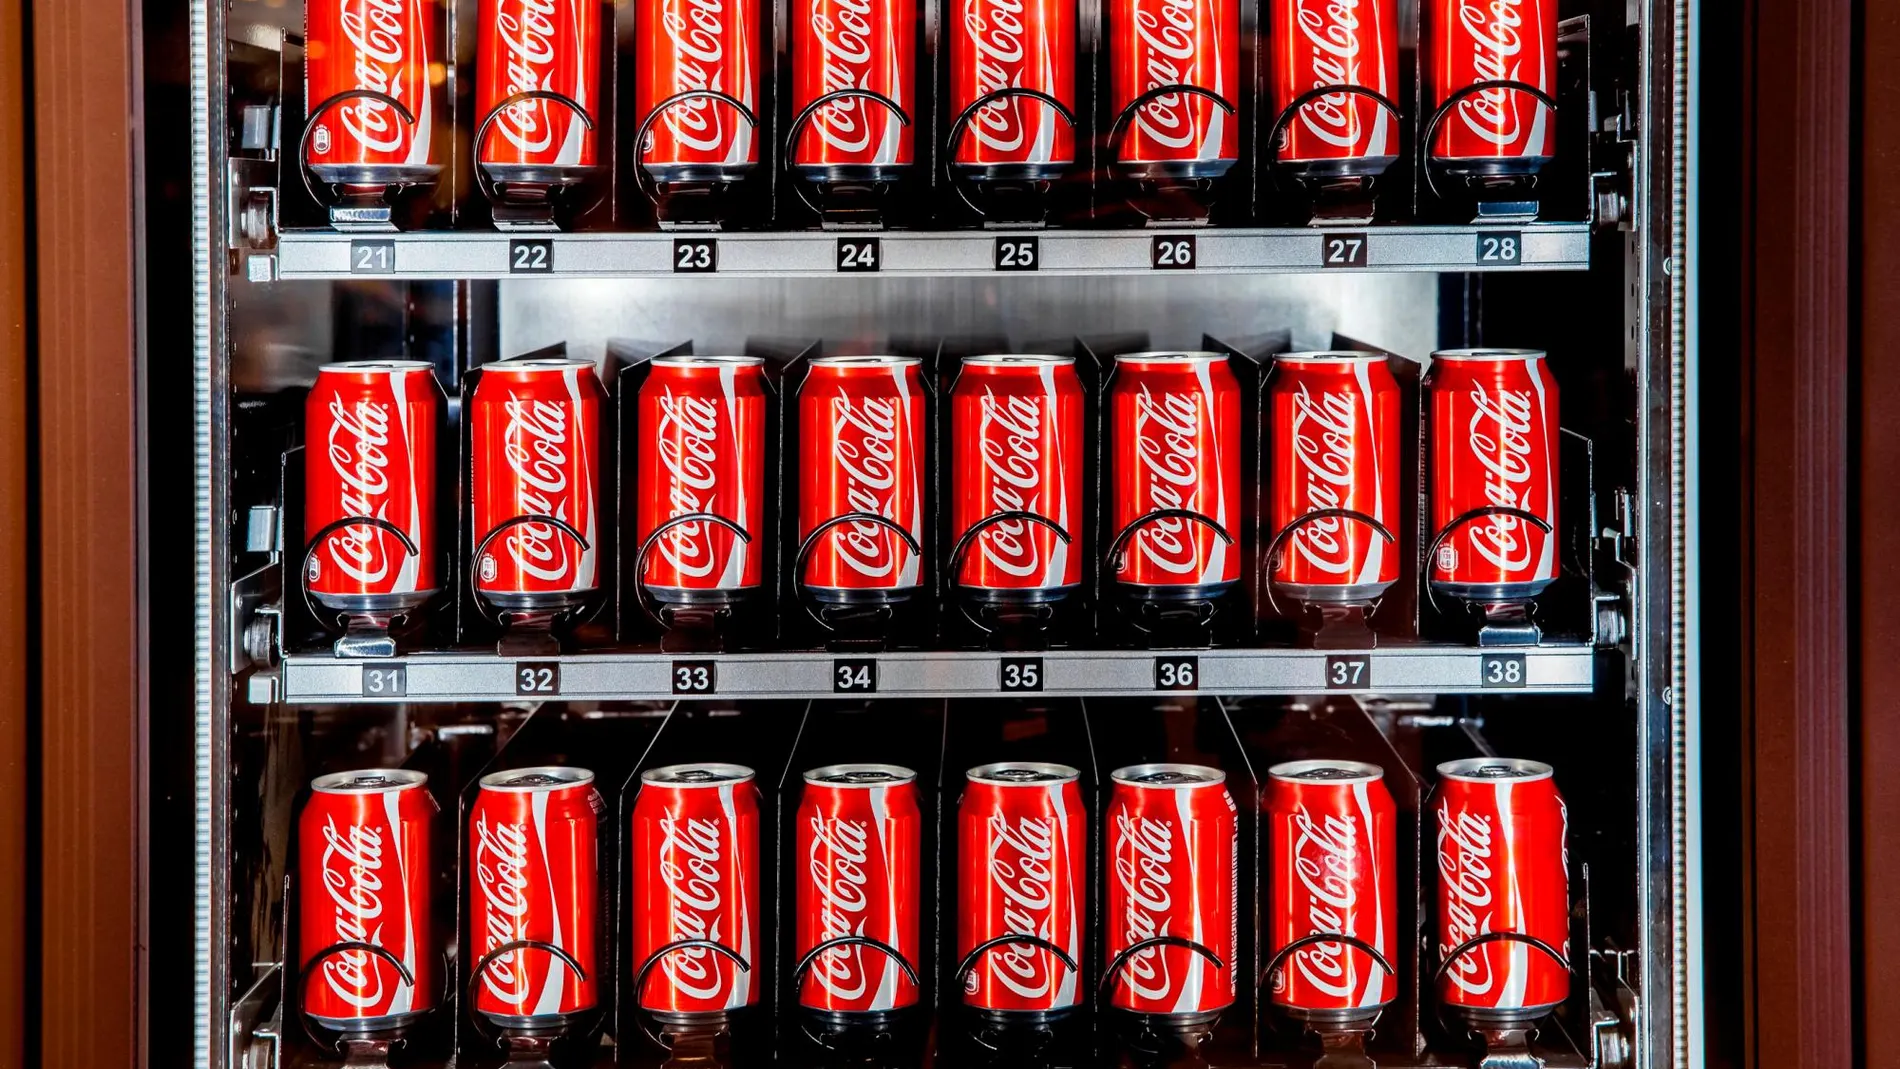 Un máquina expendedora de latas de coca-cola, en una imagen de archivo / Dreamstime